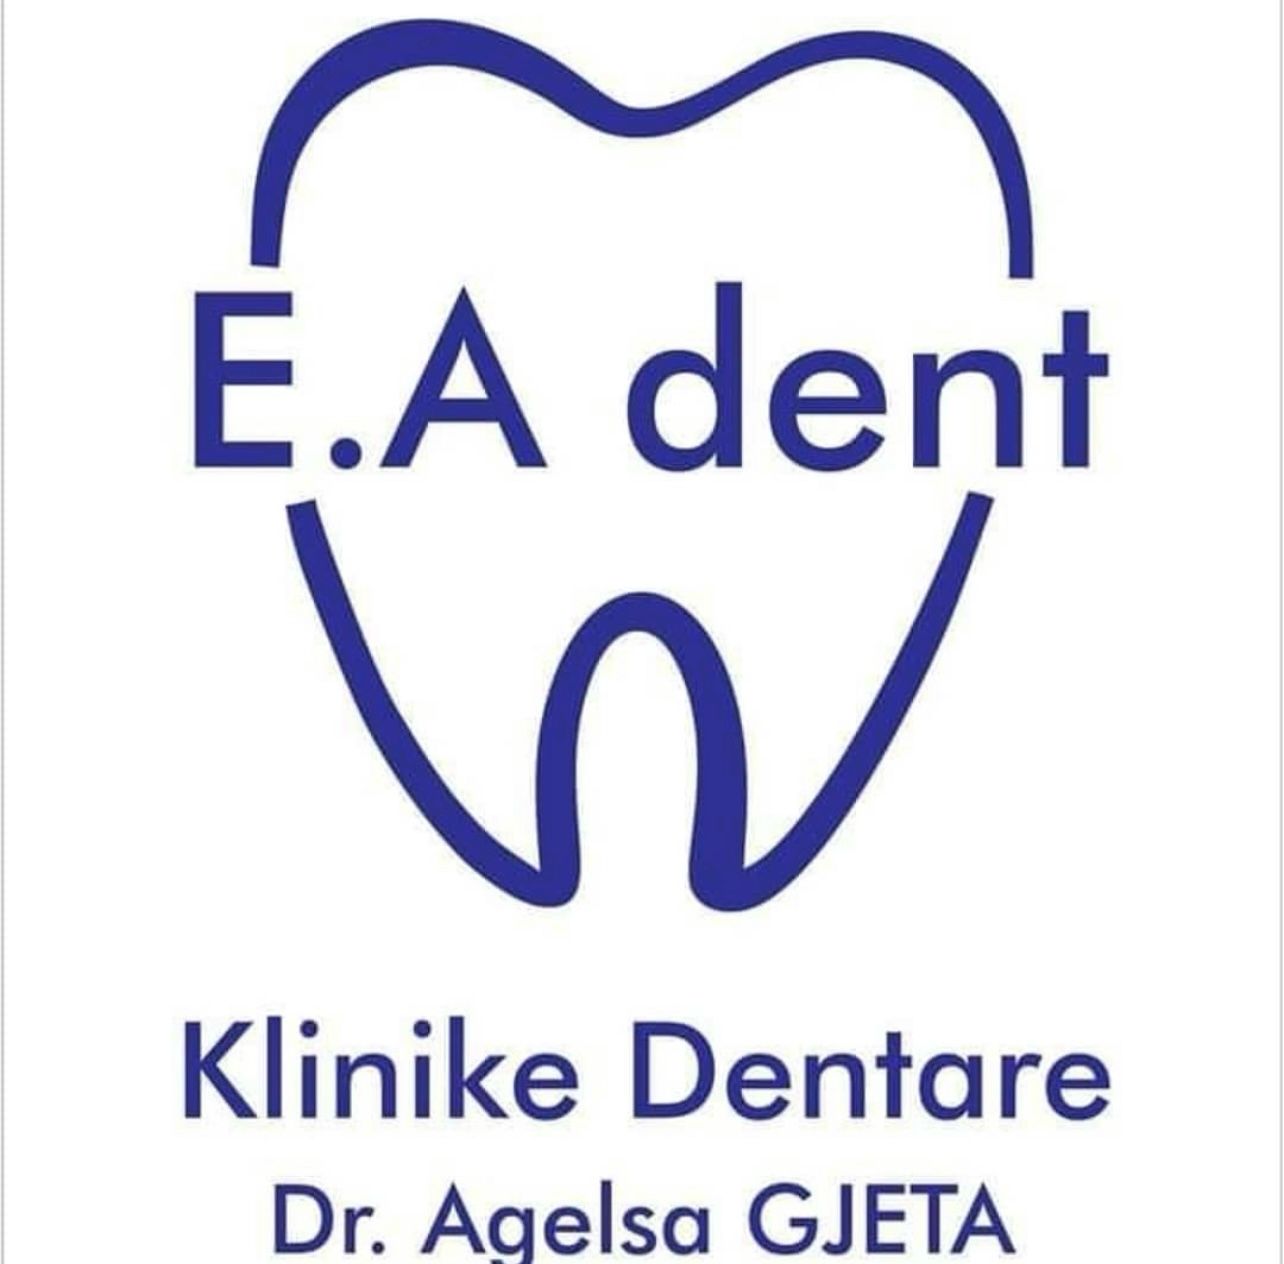 Librazhdi  krenohet me E&Adent.  Dr. Agelsa Gjeta me një eksperiencë disa vjeçare ju ofron profesionalizëm cilësor dental në qytetin e Librazhdit.